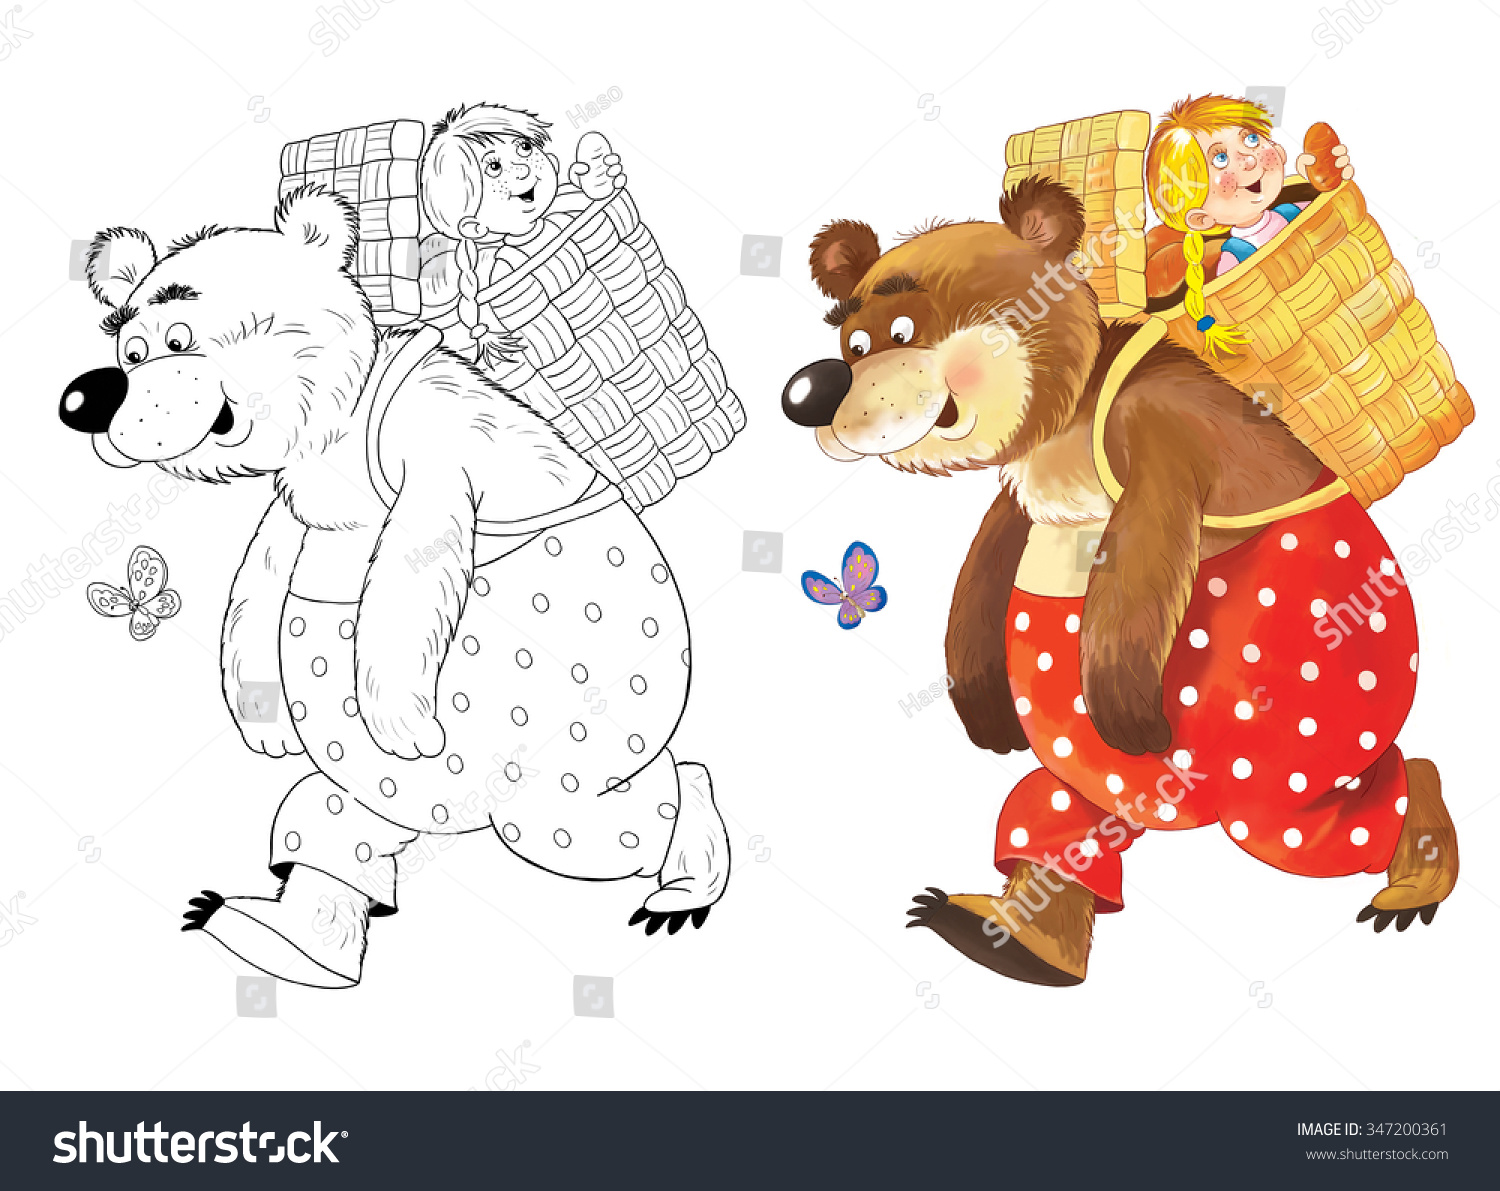 Медведь из сказки Маша и медведь на прозрачном фоне